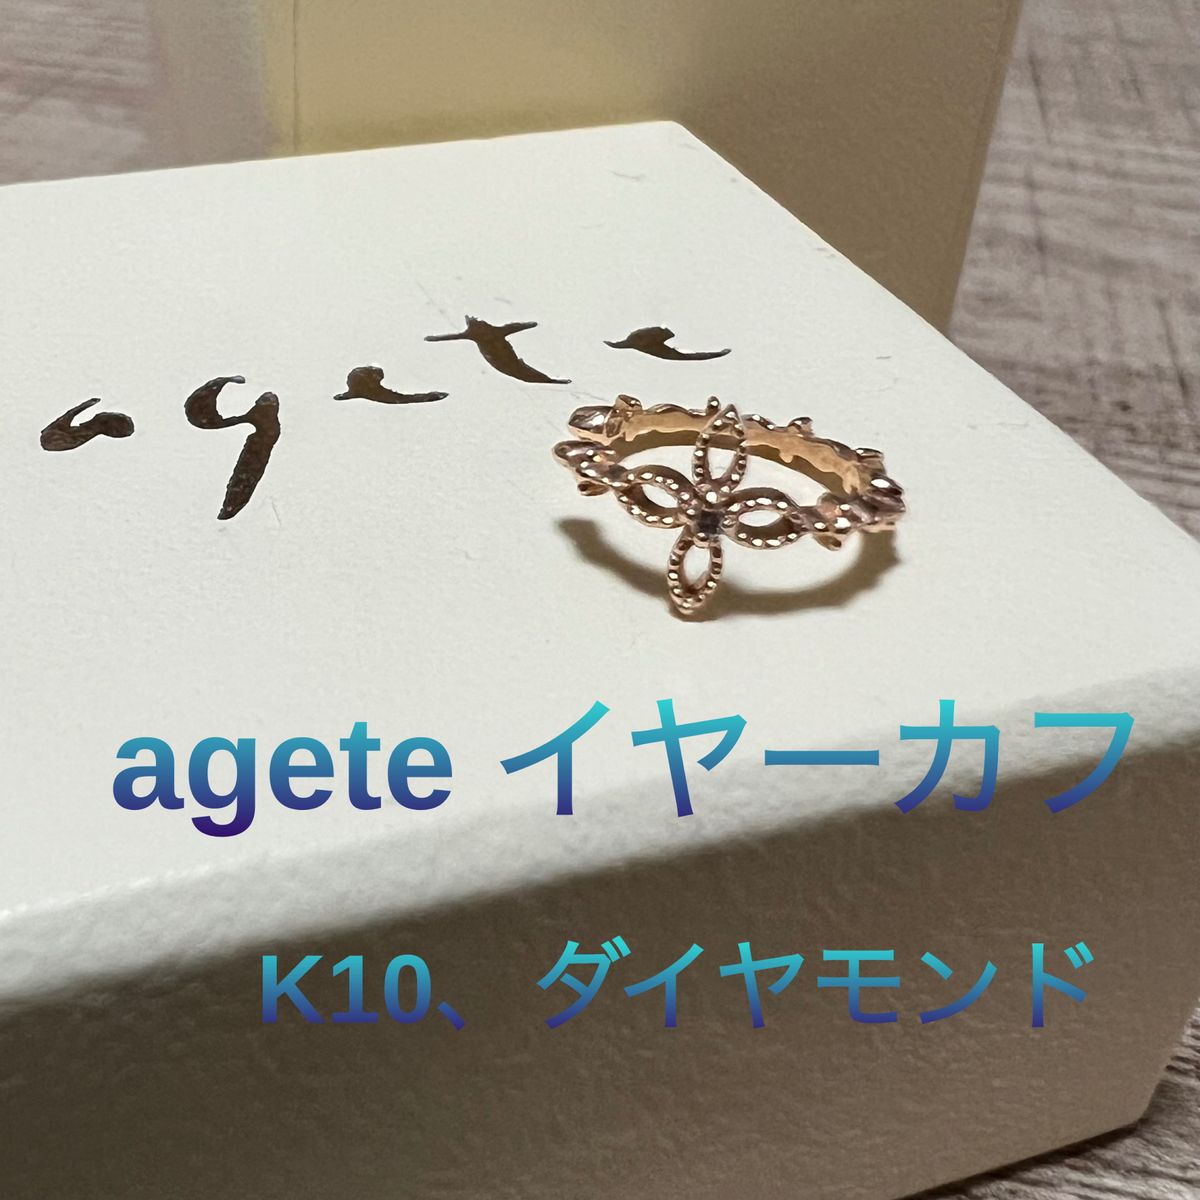 ☆*。agete アガット K10 ダイヤモンド イヤーカフ 繊細なデザイン ☆*。